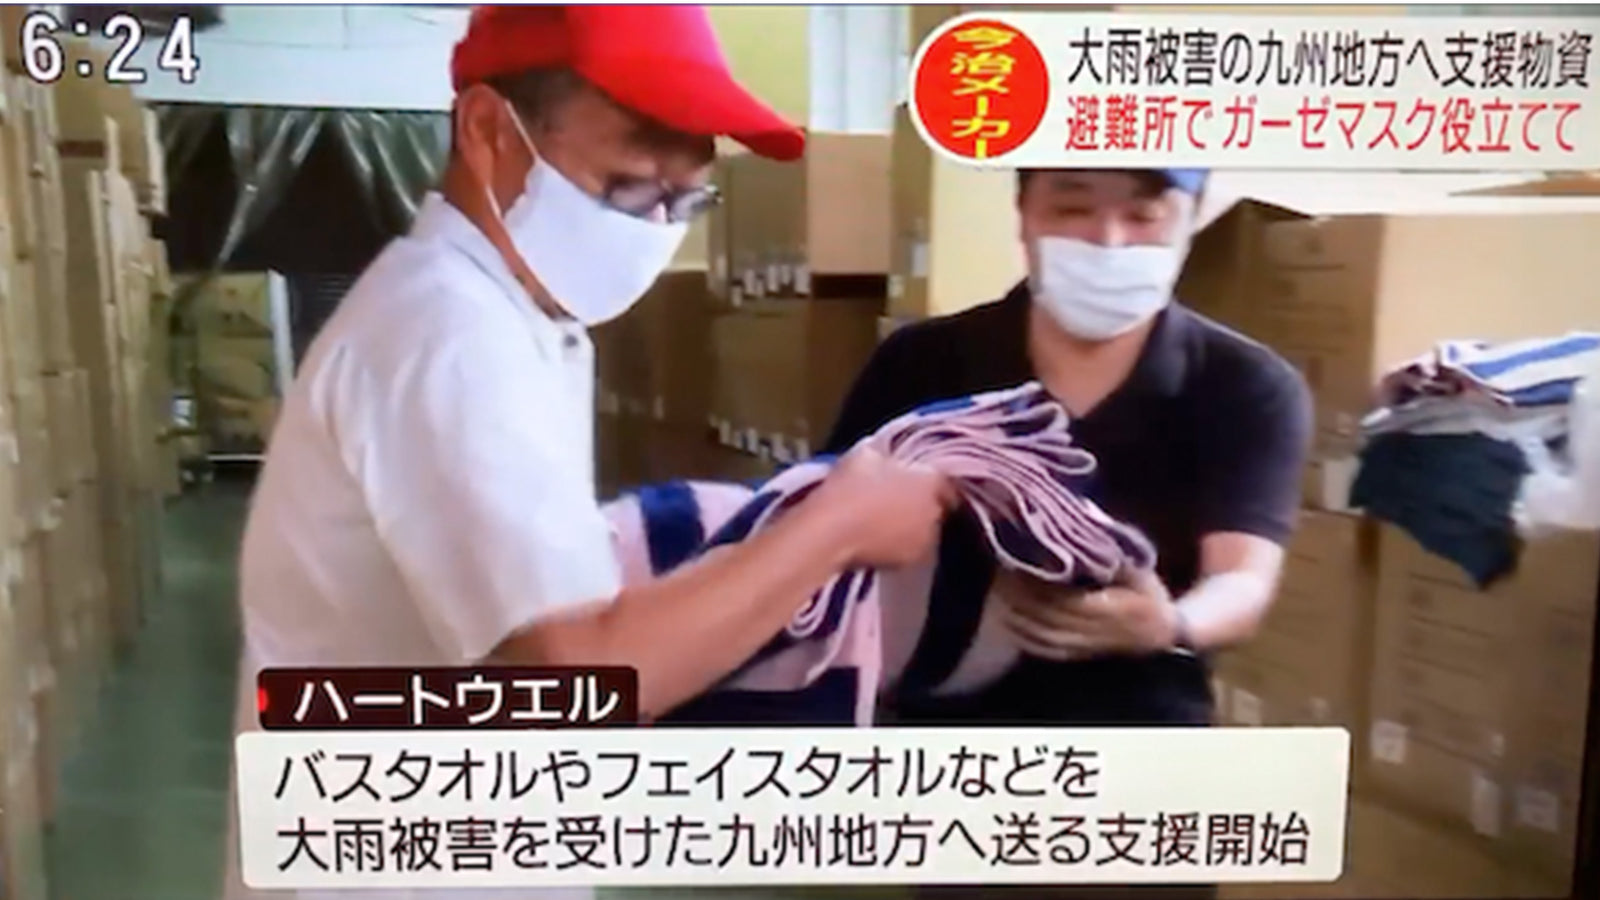 豪雨による被災地支援の取り組みが「愛媛テレビ朝日」にて紹介されました